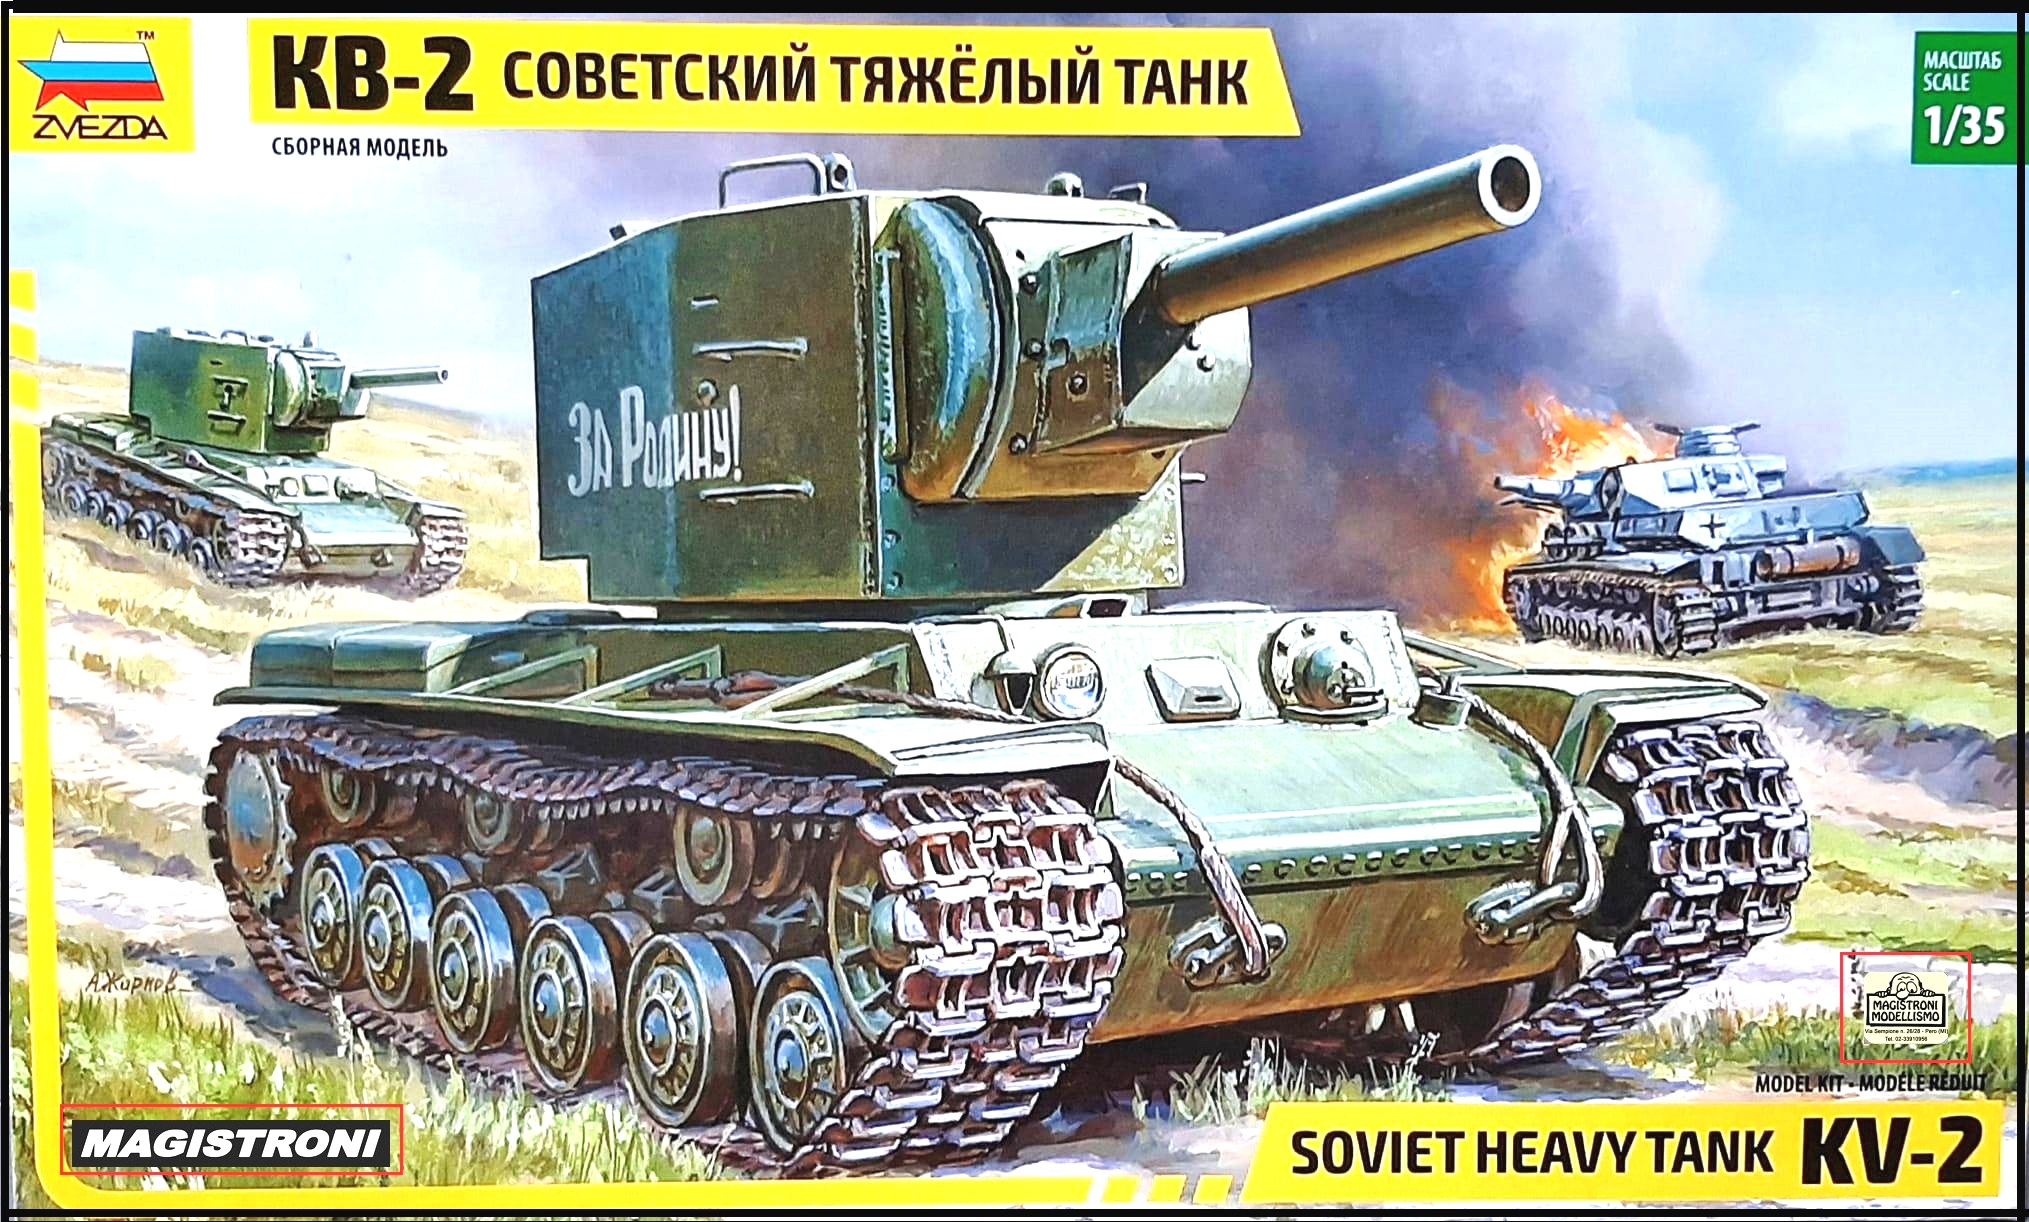 SOVIET HEAVY TANK KV-2